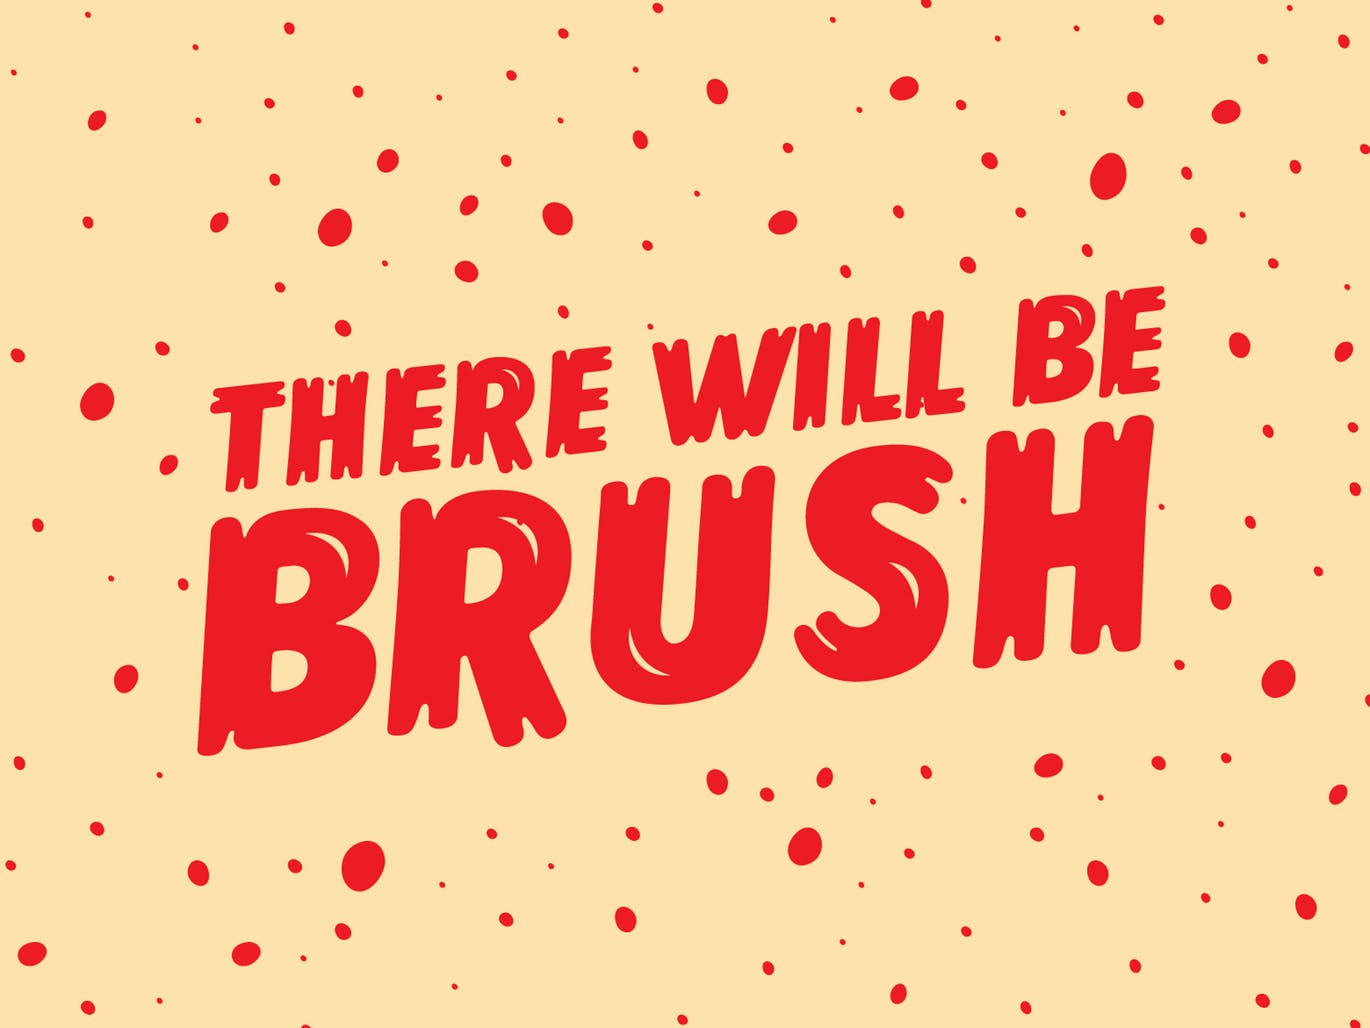 复古丹麦电影海报设计英文笔刷字体 Lonkie Brush插图(14)